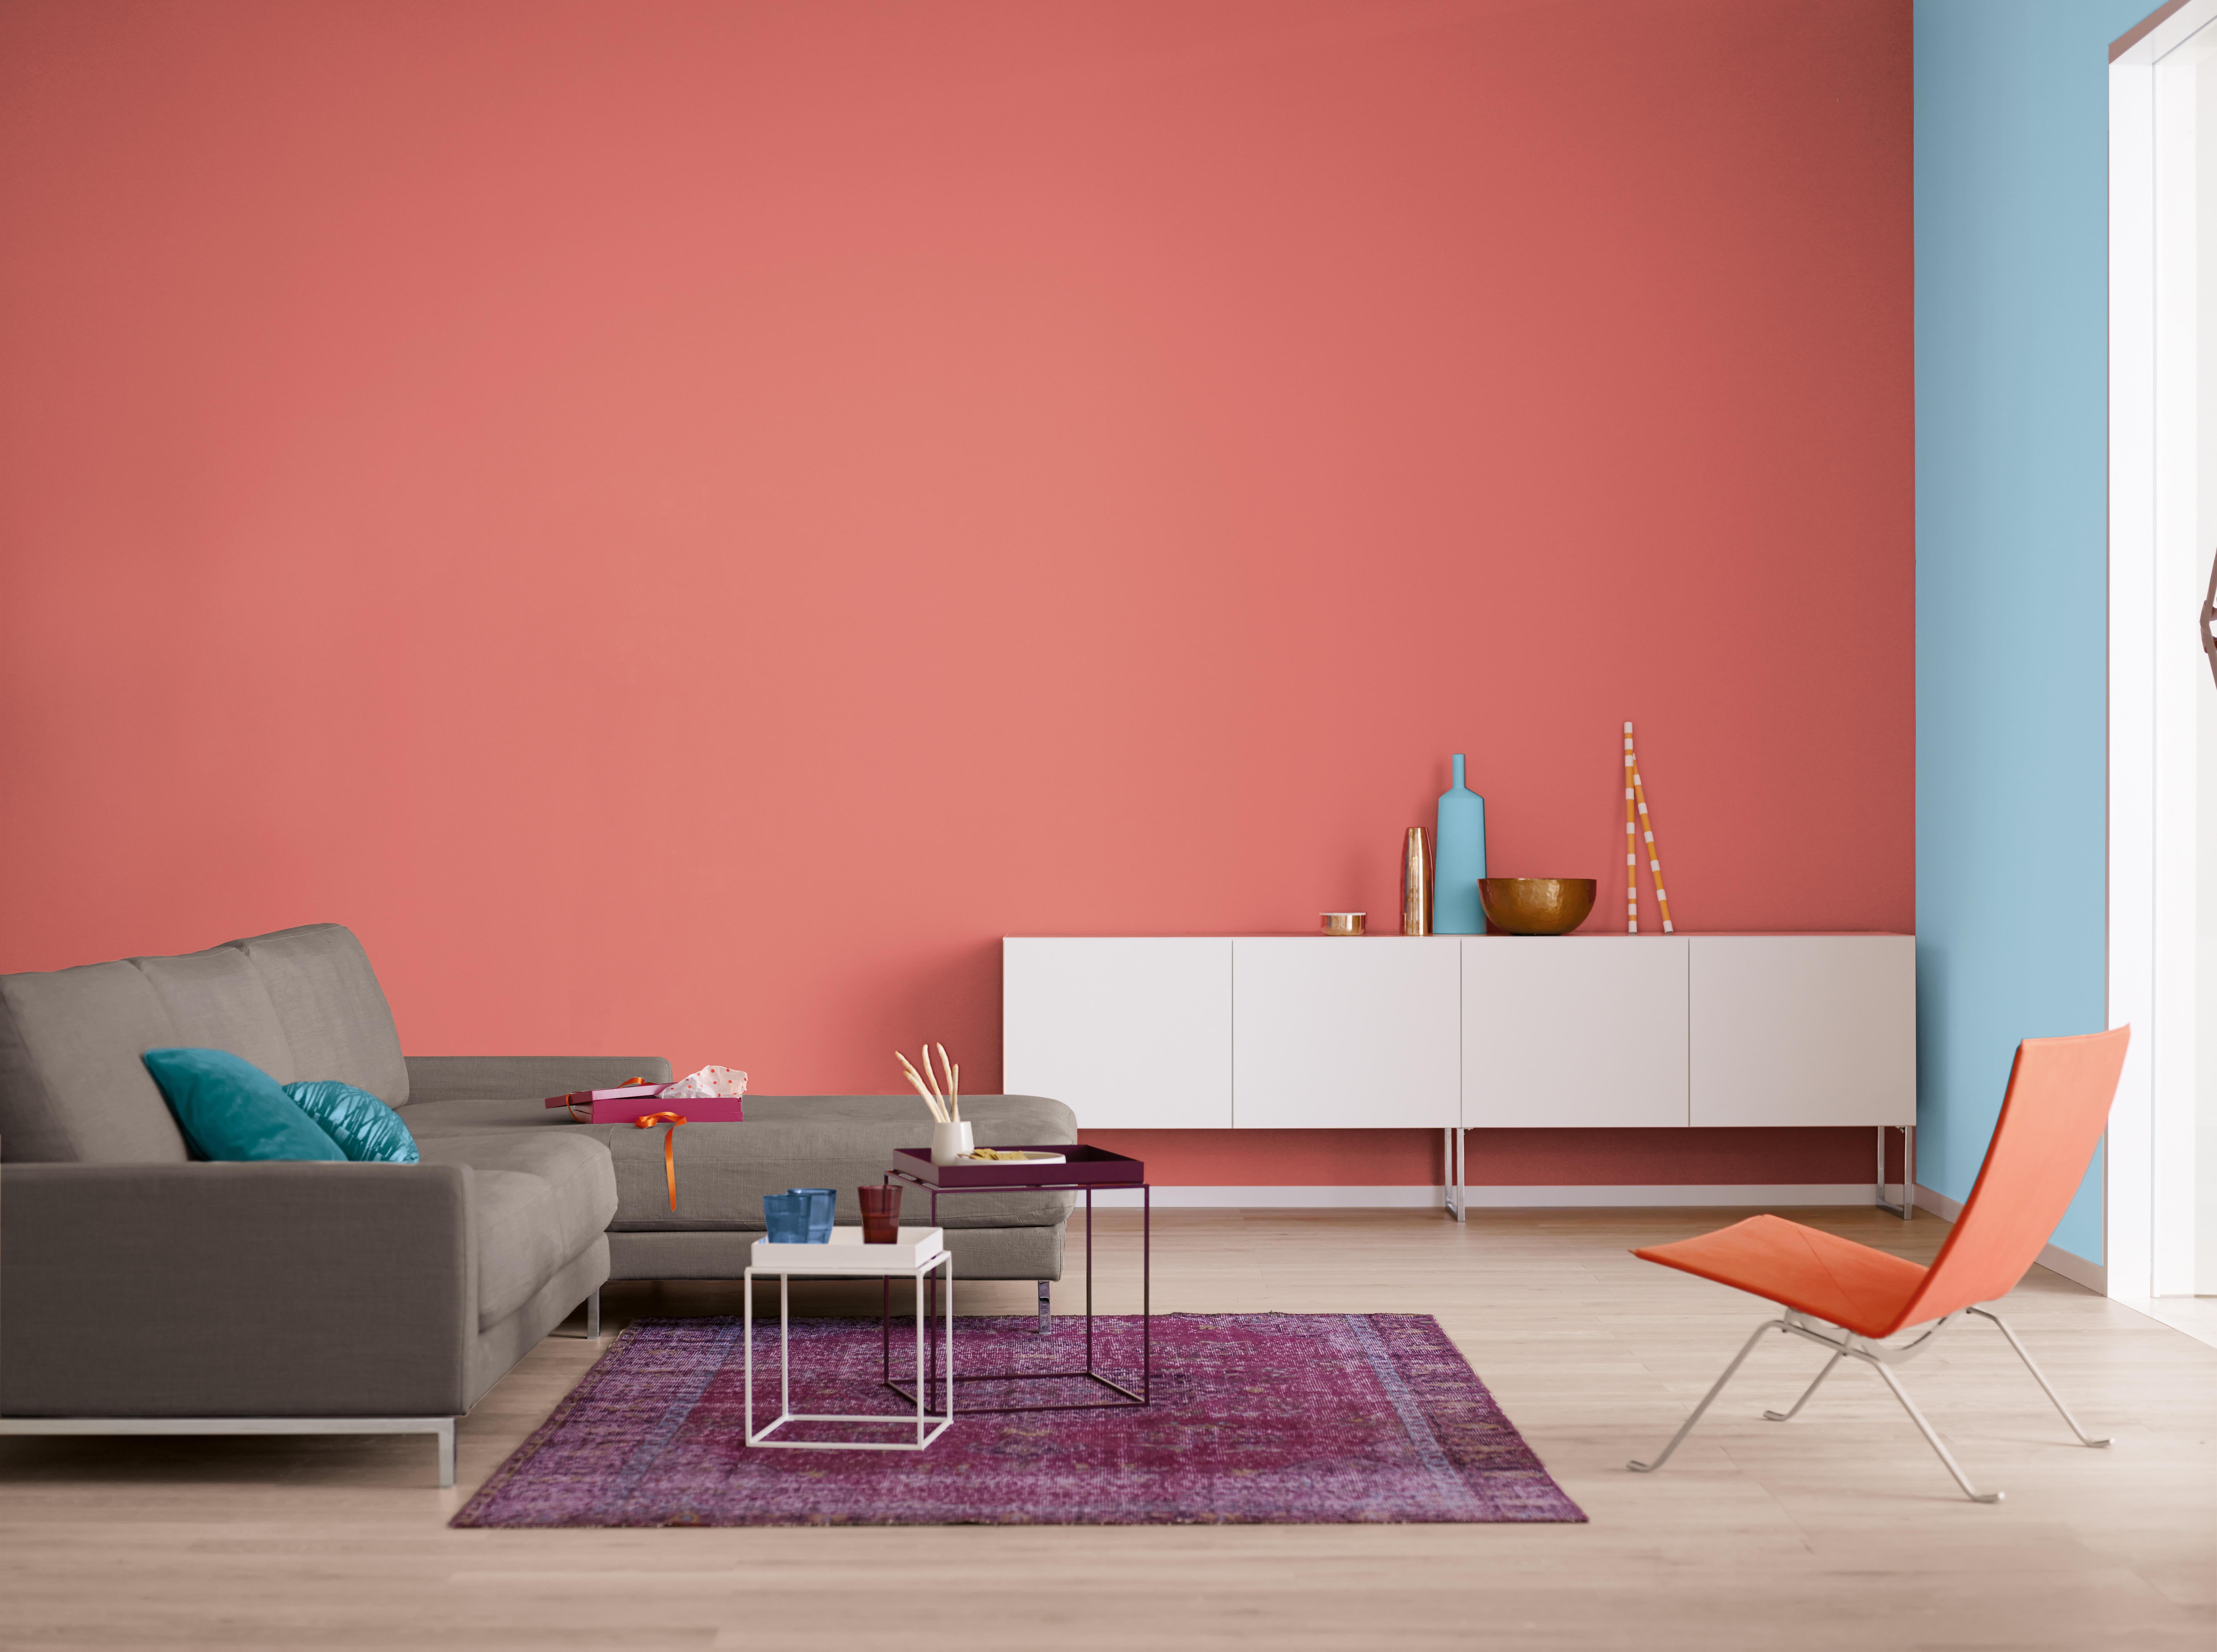 Modernes Wohnzimmer mit Beistelltischen, Sideboard, Sessel und Teppich vor rot und Himmelbalu gestrichenen Wänden.